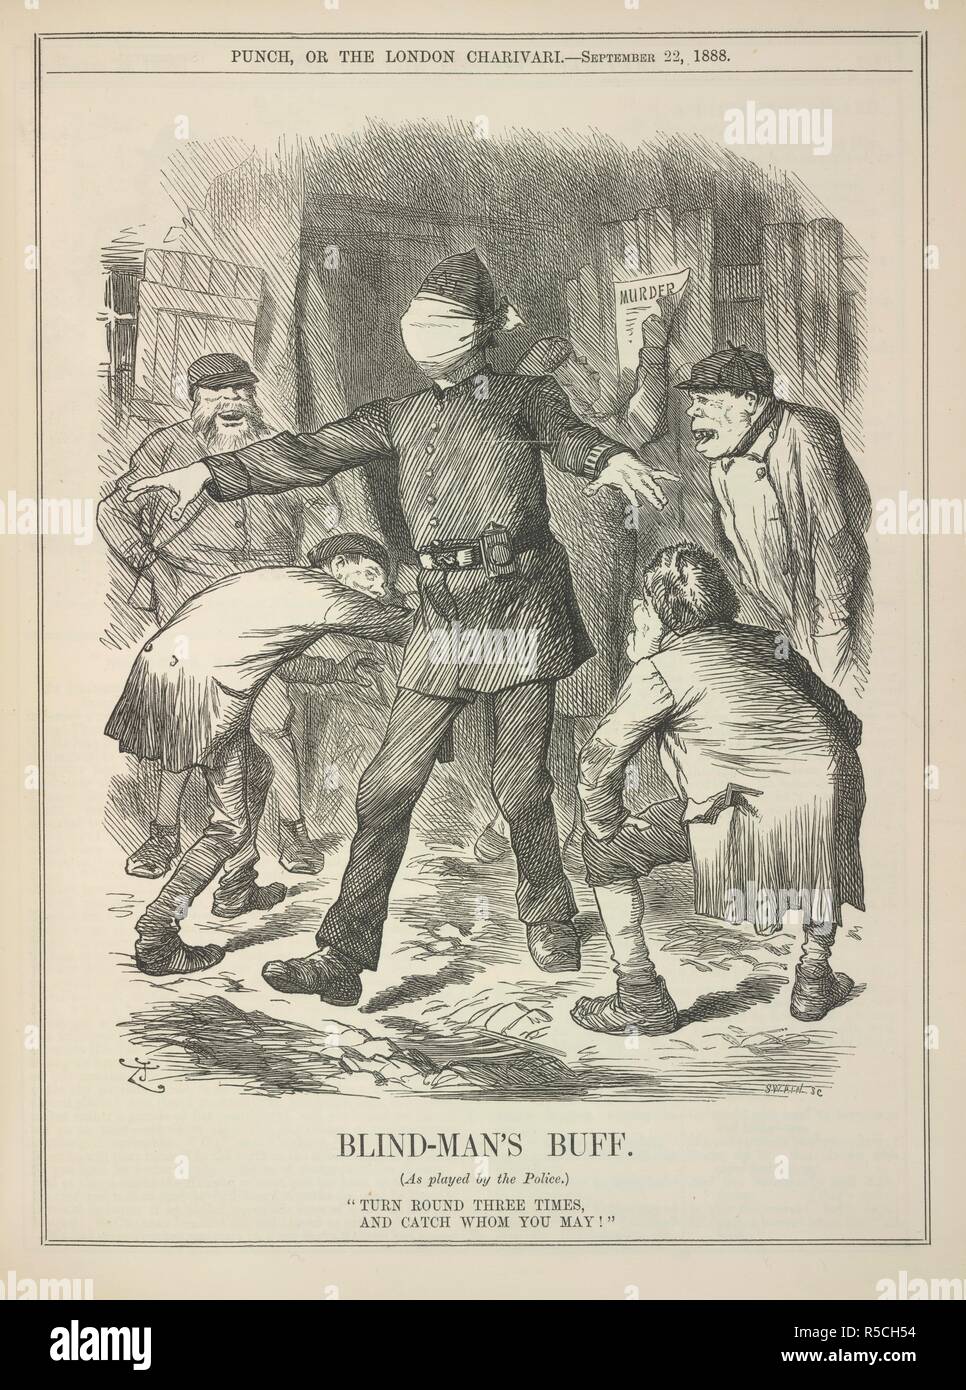 Ciego de buff. Punzón, o el London Charivari. Londres, 22 de septiembre de  1888. Comentarios críticos sobre la Policía Metropolitana durante la época  de la Whitechapel o 'Jack el Destripador' asesinatos. Imagen